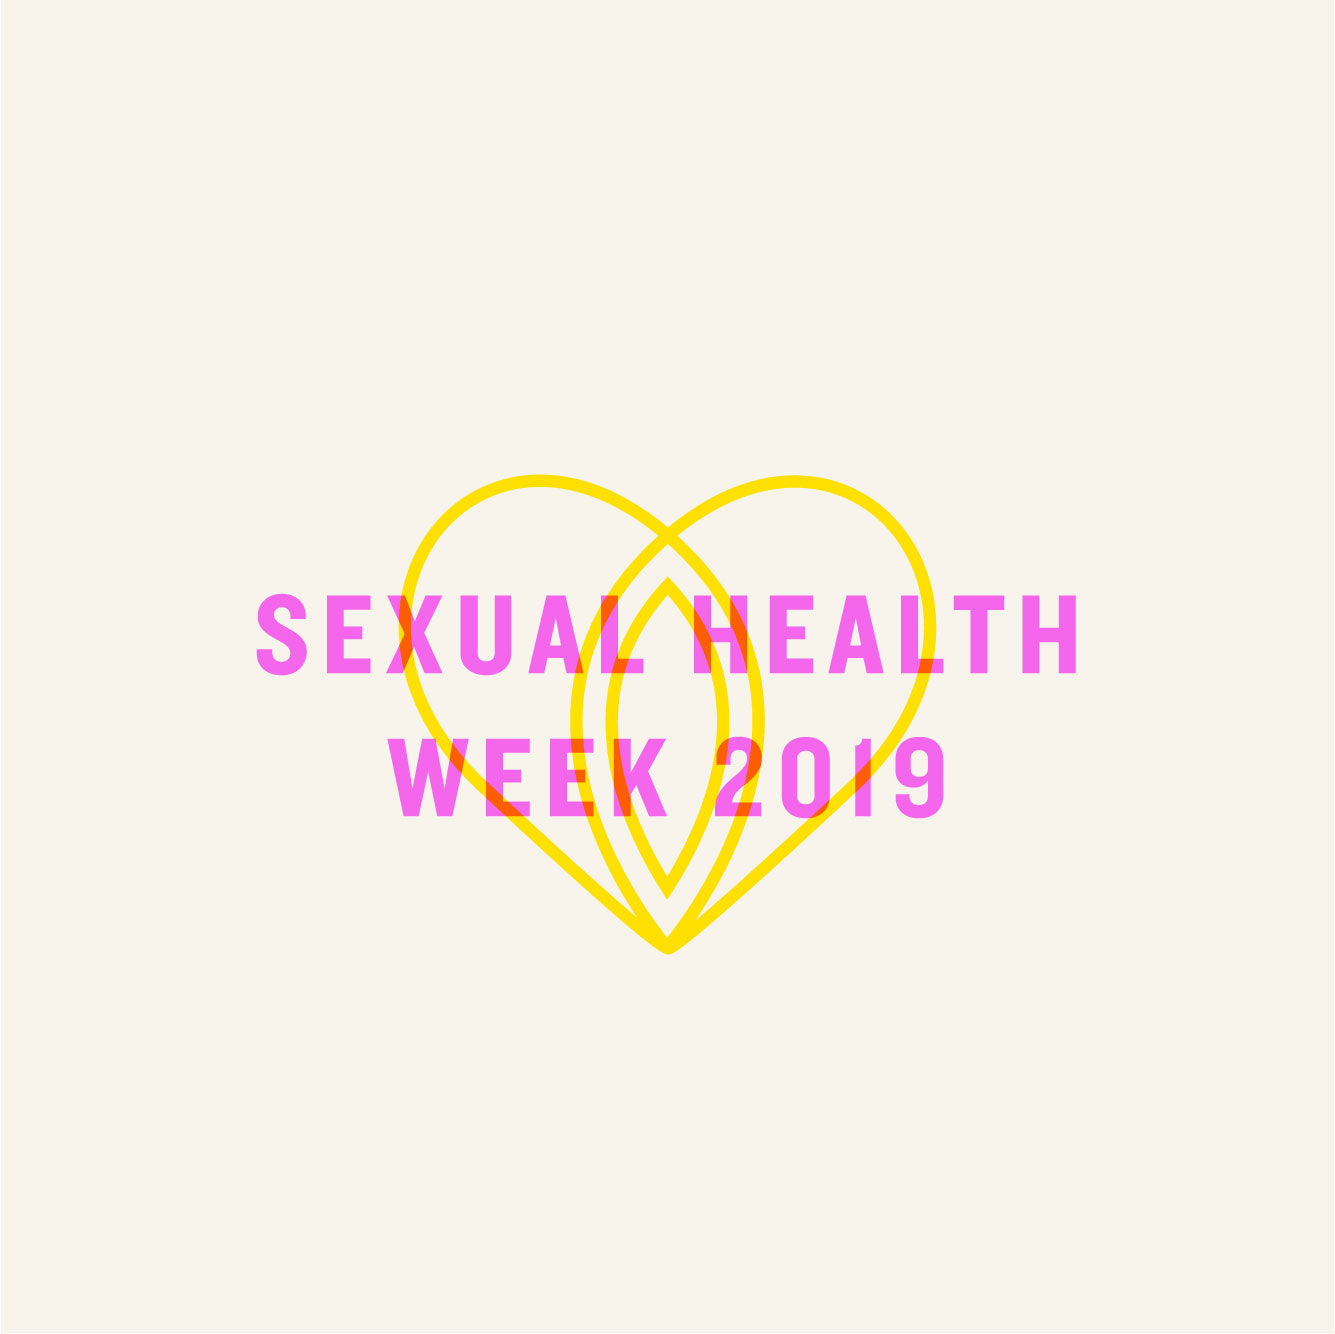 Sexual Health Week 2019